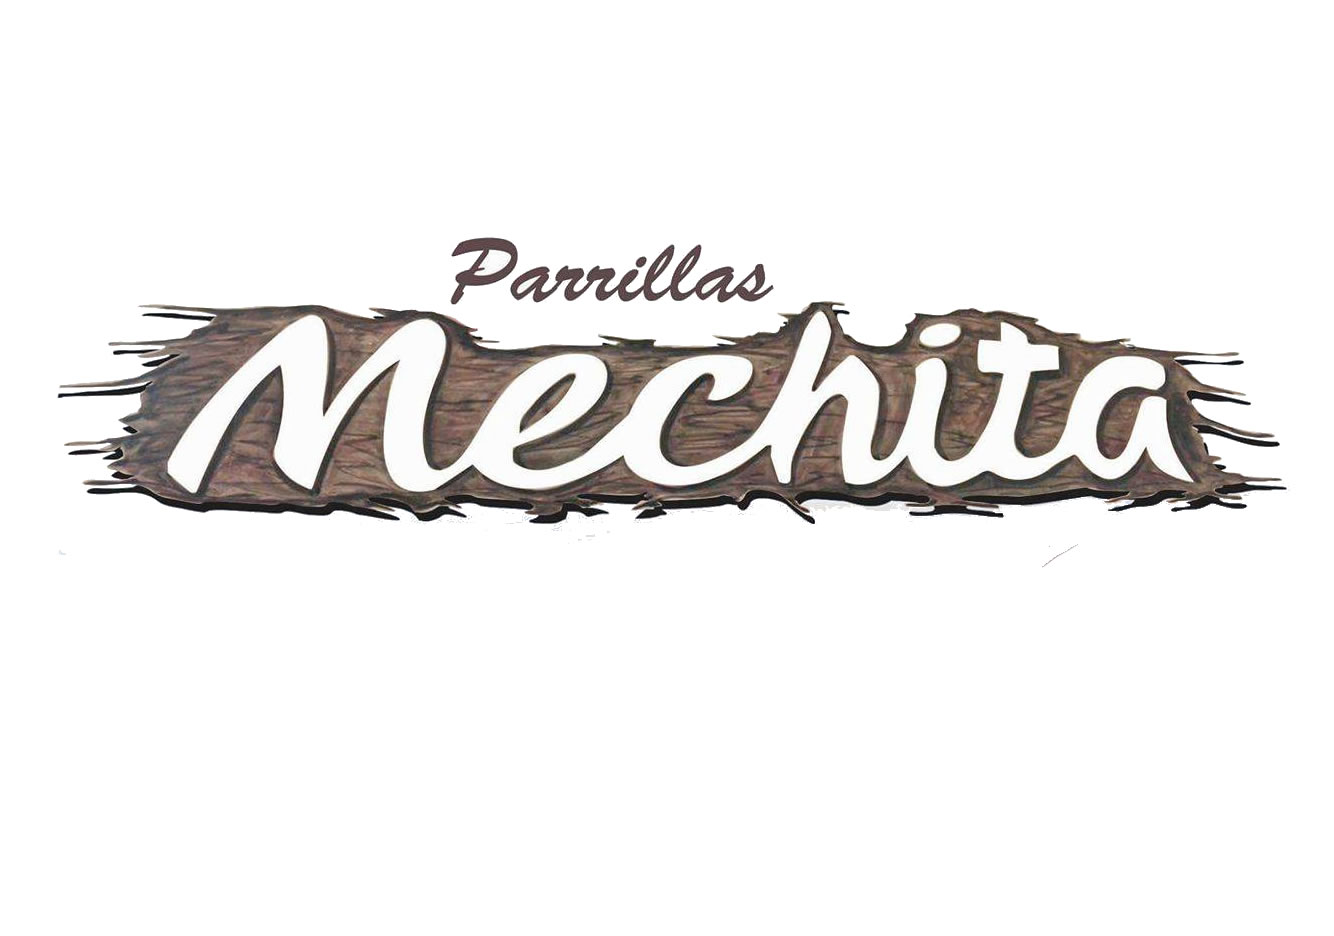 Parrillas Mechita